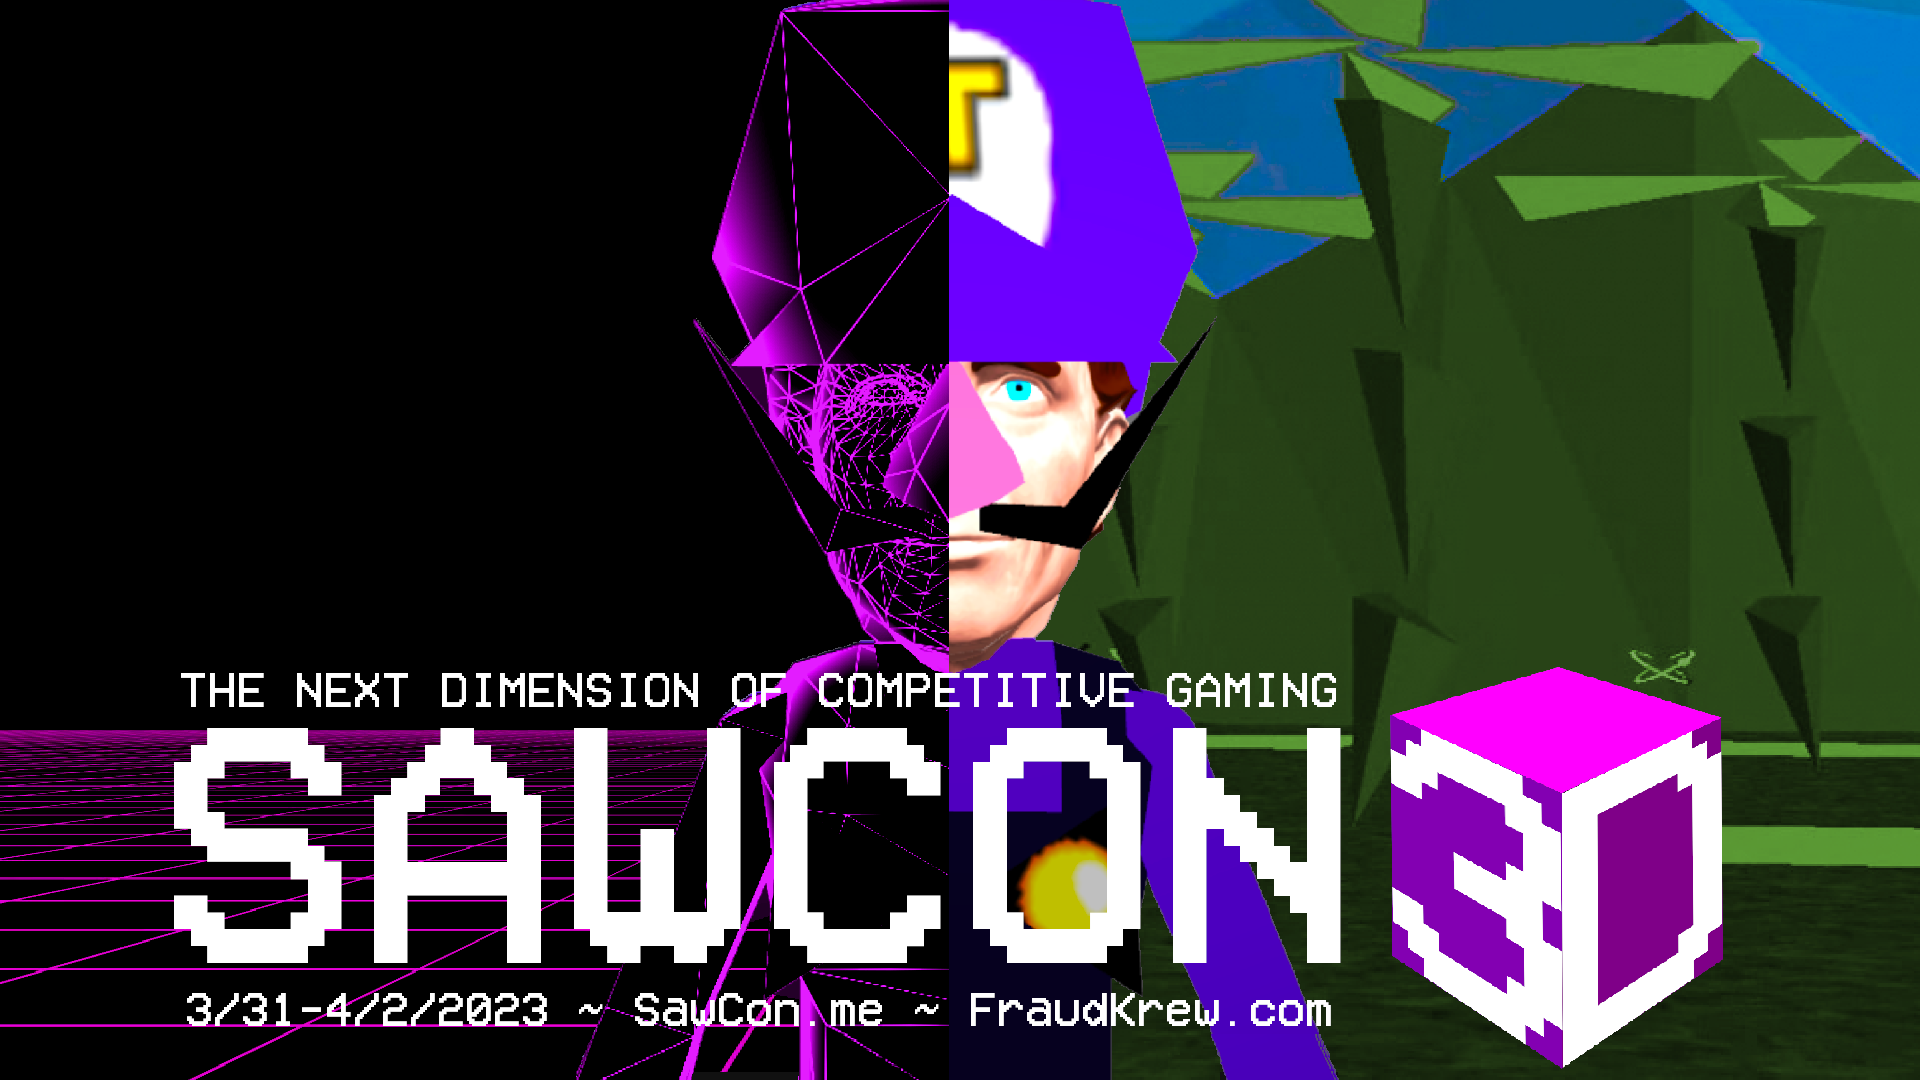 SAWCon 3D: The Next Dimension